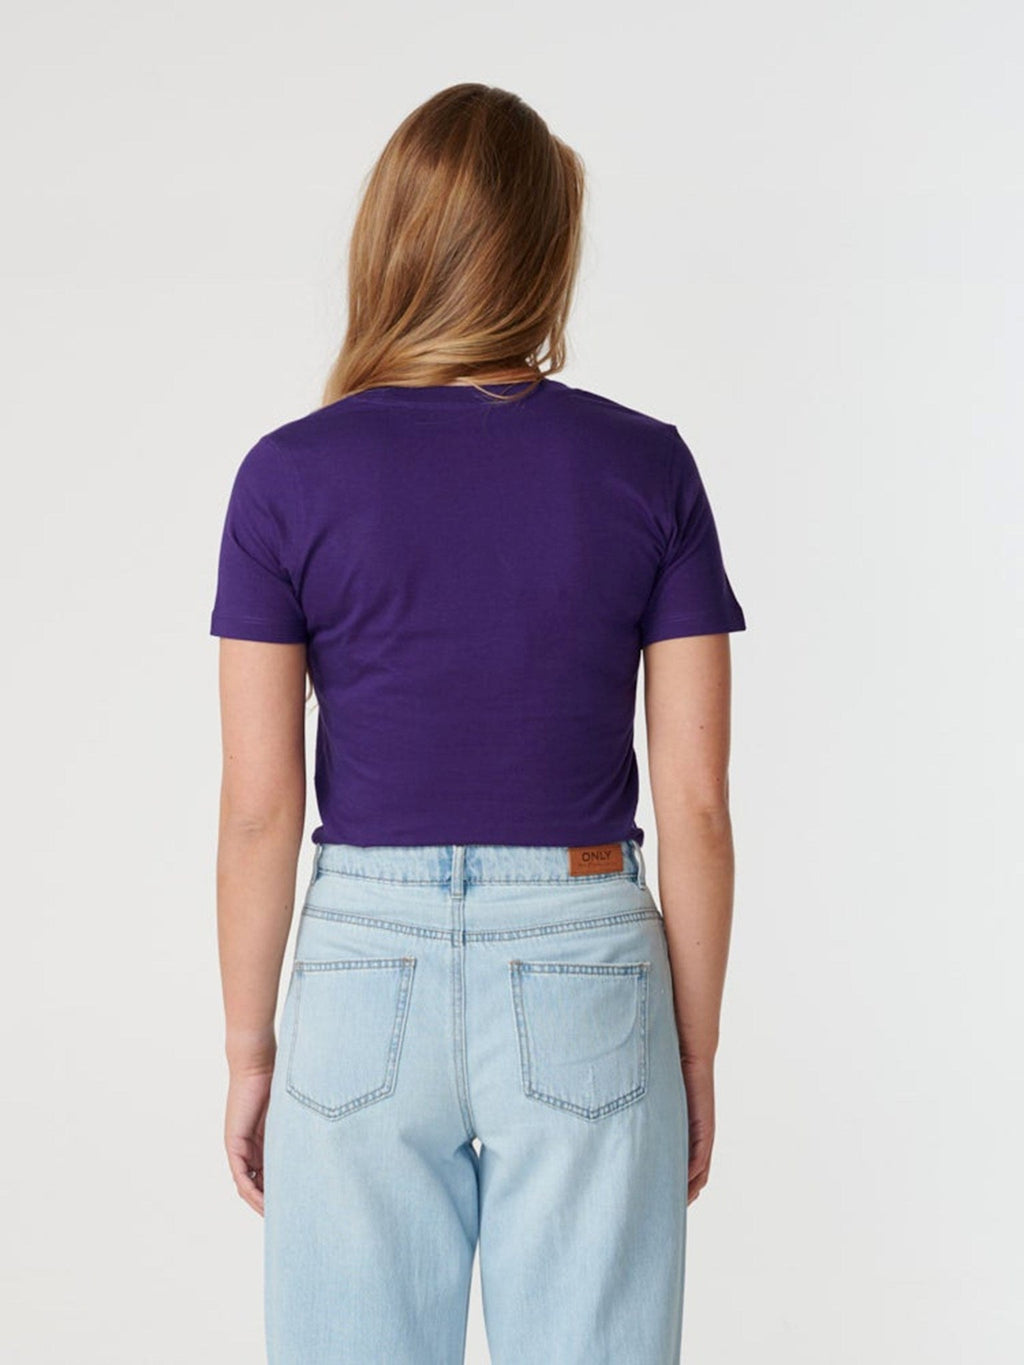 安装T恤 - 紫色